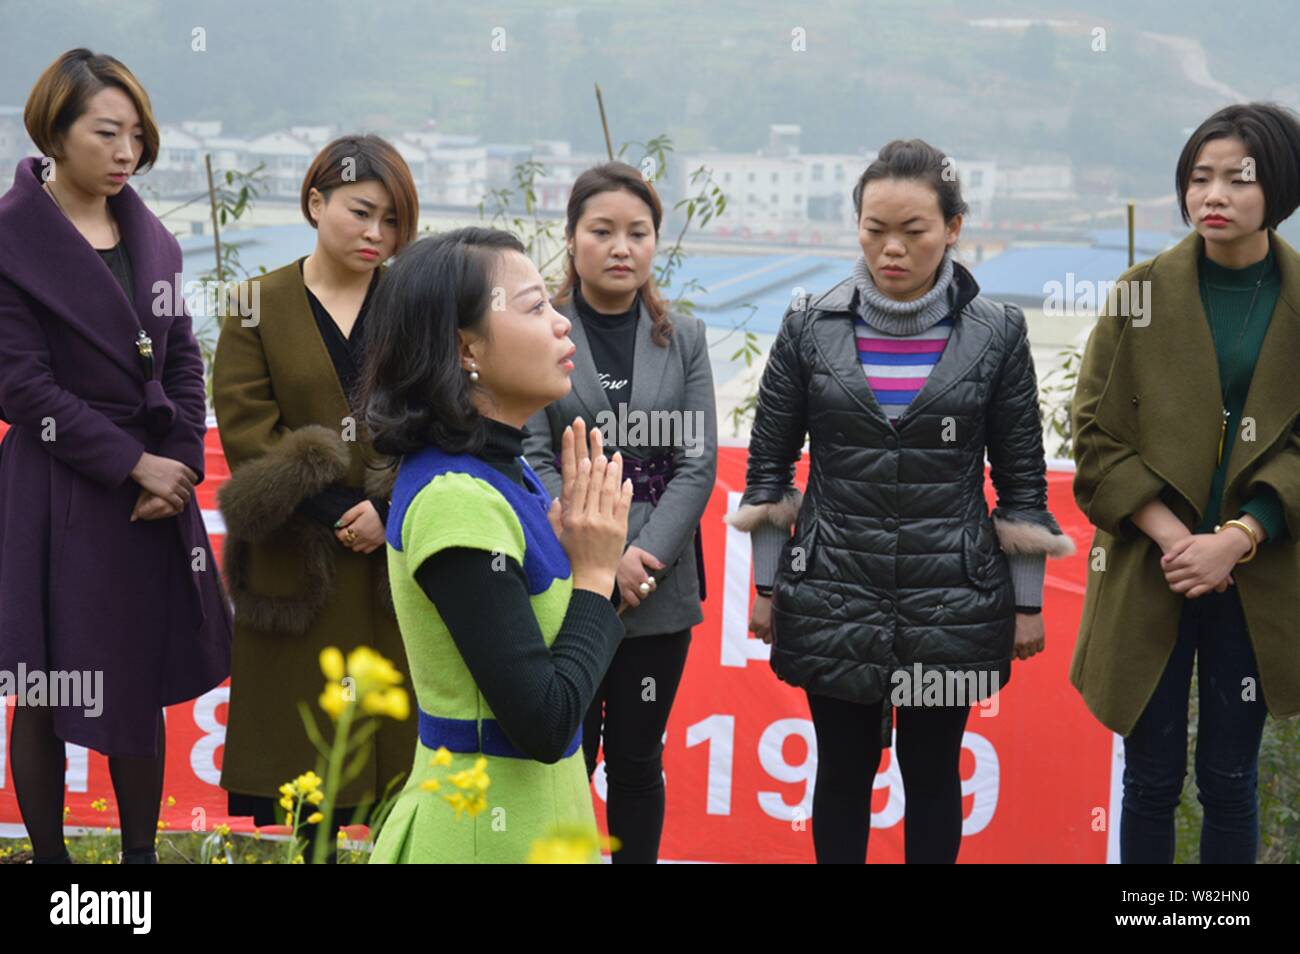 Une femme chinoise partage les sentiments de 'cimetière' méditation avec les autres après avoir couché dans un tombeau 'terre' au cours d'un rituel peu commun pour aider les divorcés faire face Banque D'Images